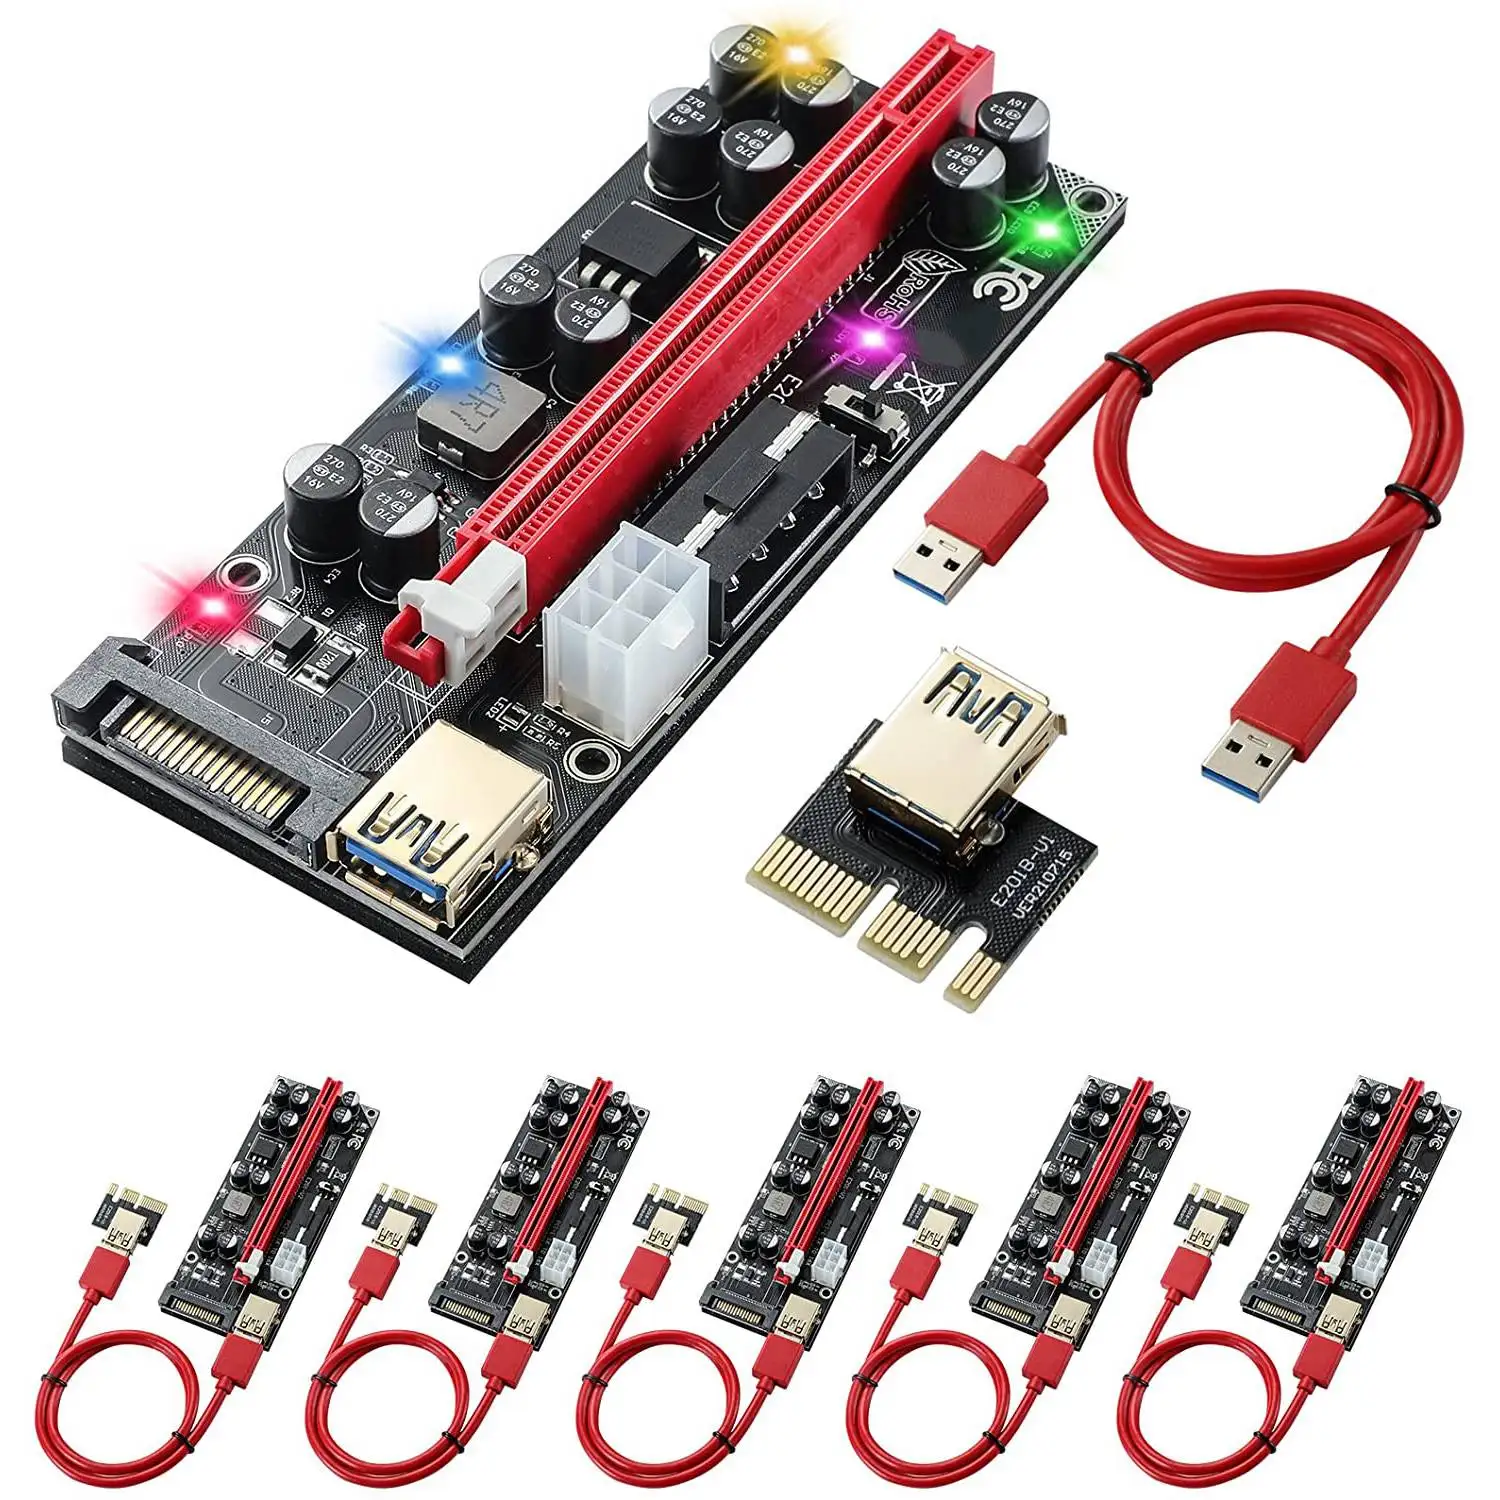 

6 упаковок PCI-E Райзер GPU райзеры карты 10 конденсаторов, 16X до 1X Pcie Экспресс-адаптер для майнинга биткоинов ETH